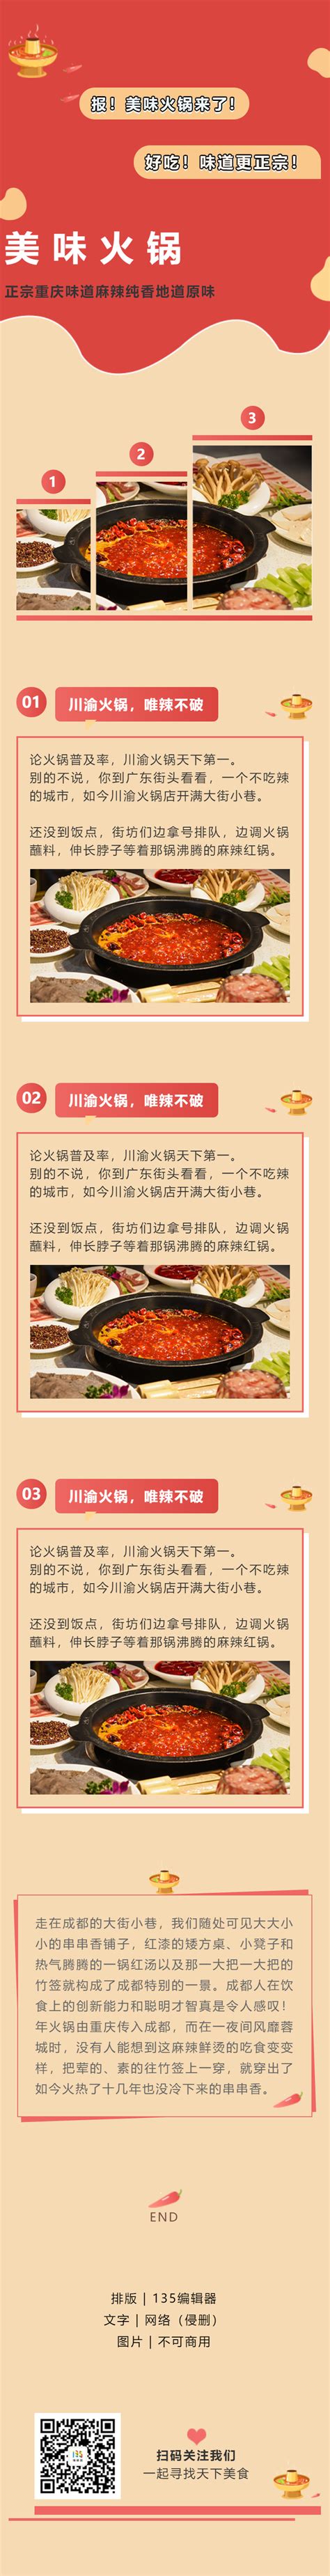 中餐美食餐馆人气套餐公众号封面大图模板在线图片制作_Fotor懒设计